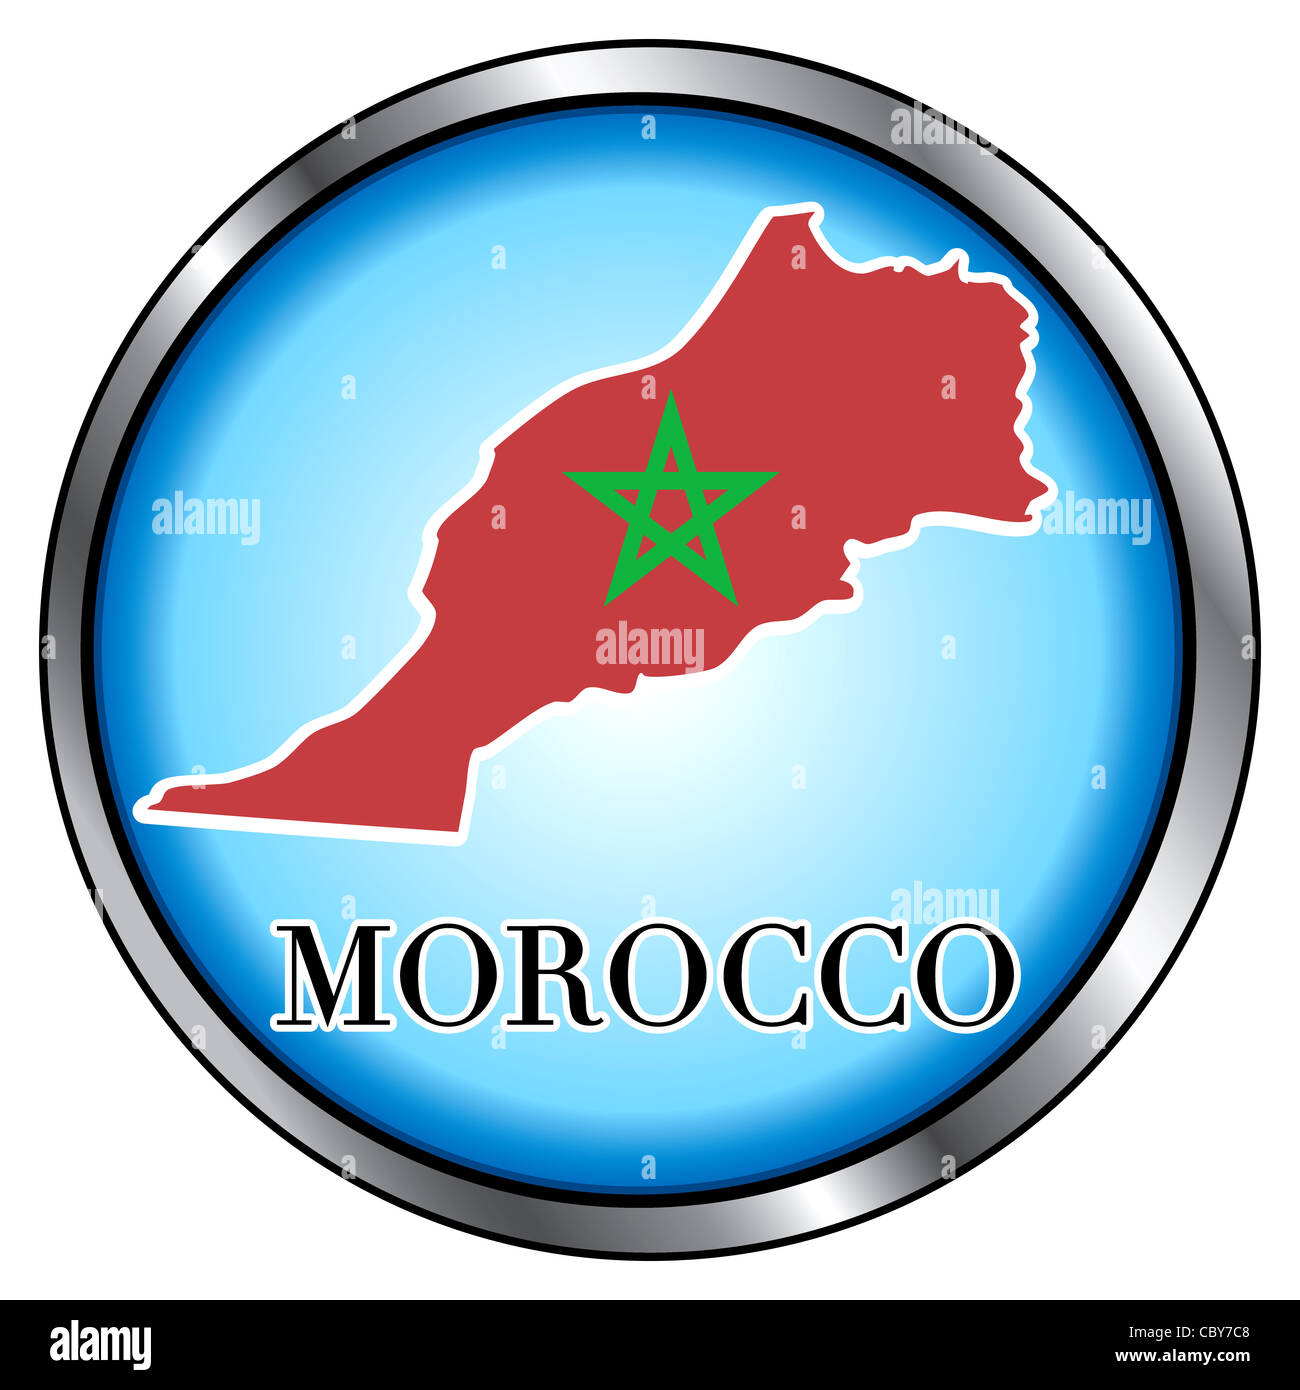 Illustrazione di vettore per il Marocco, tasto rotondo. Foto Stock